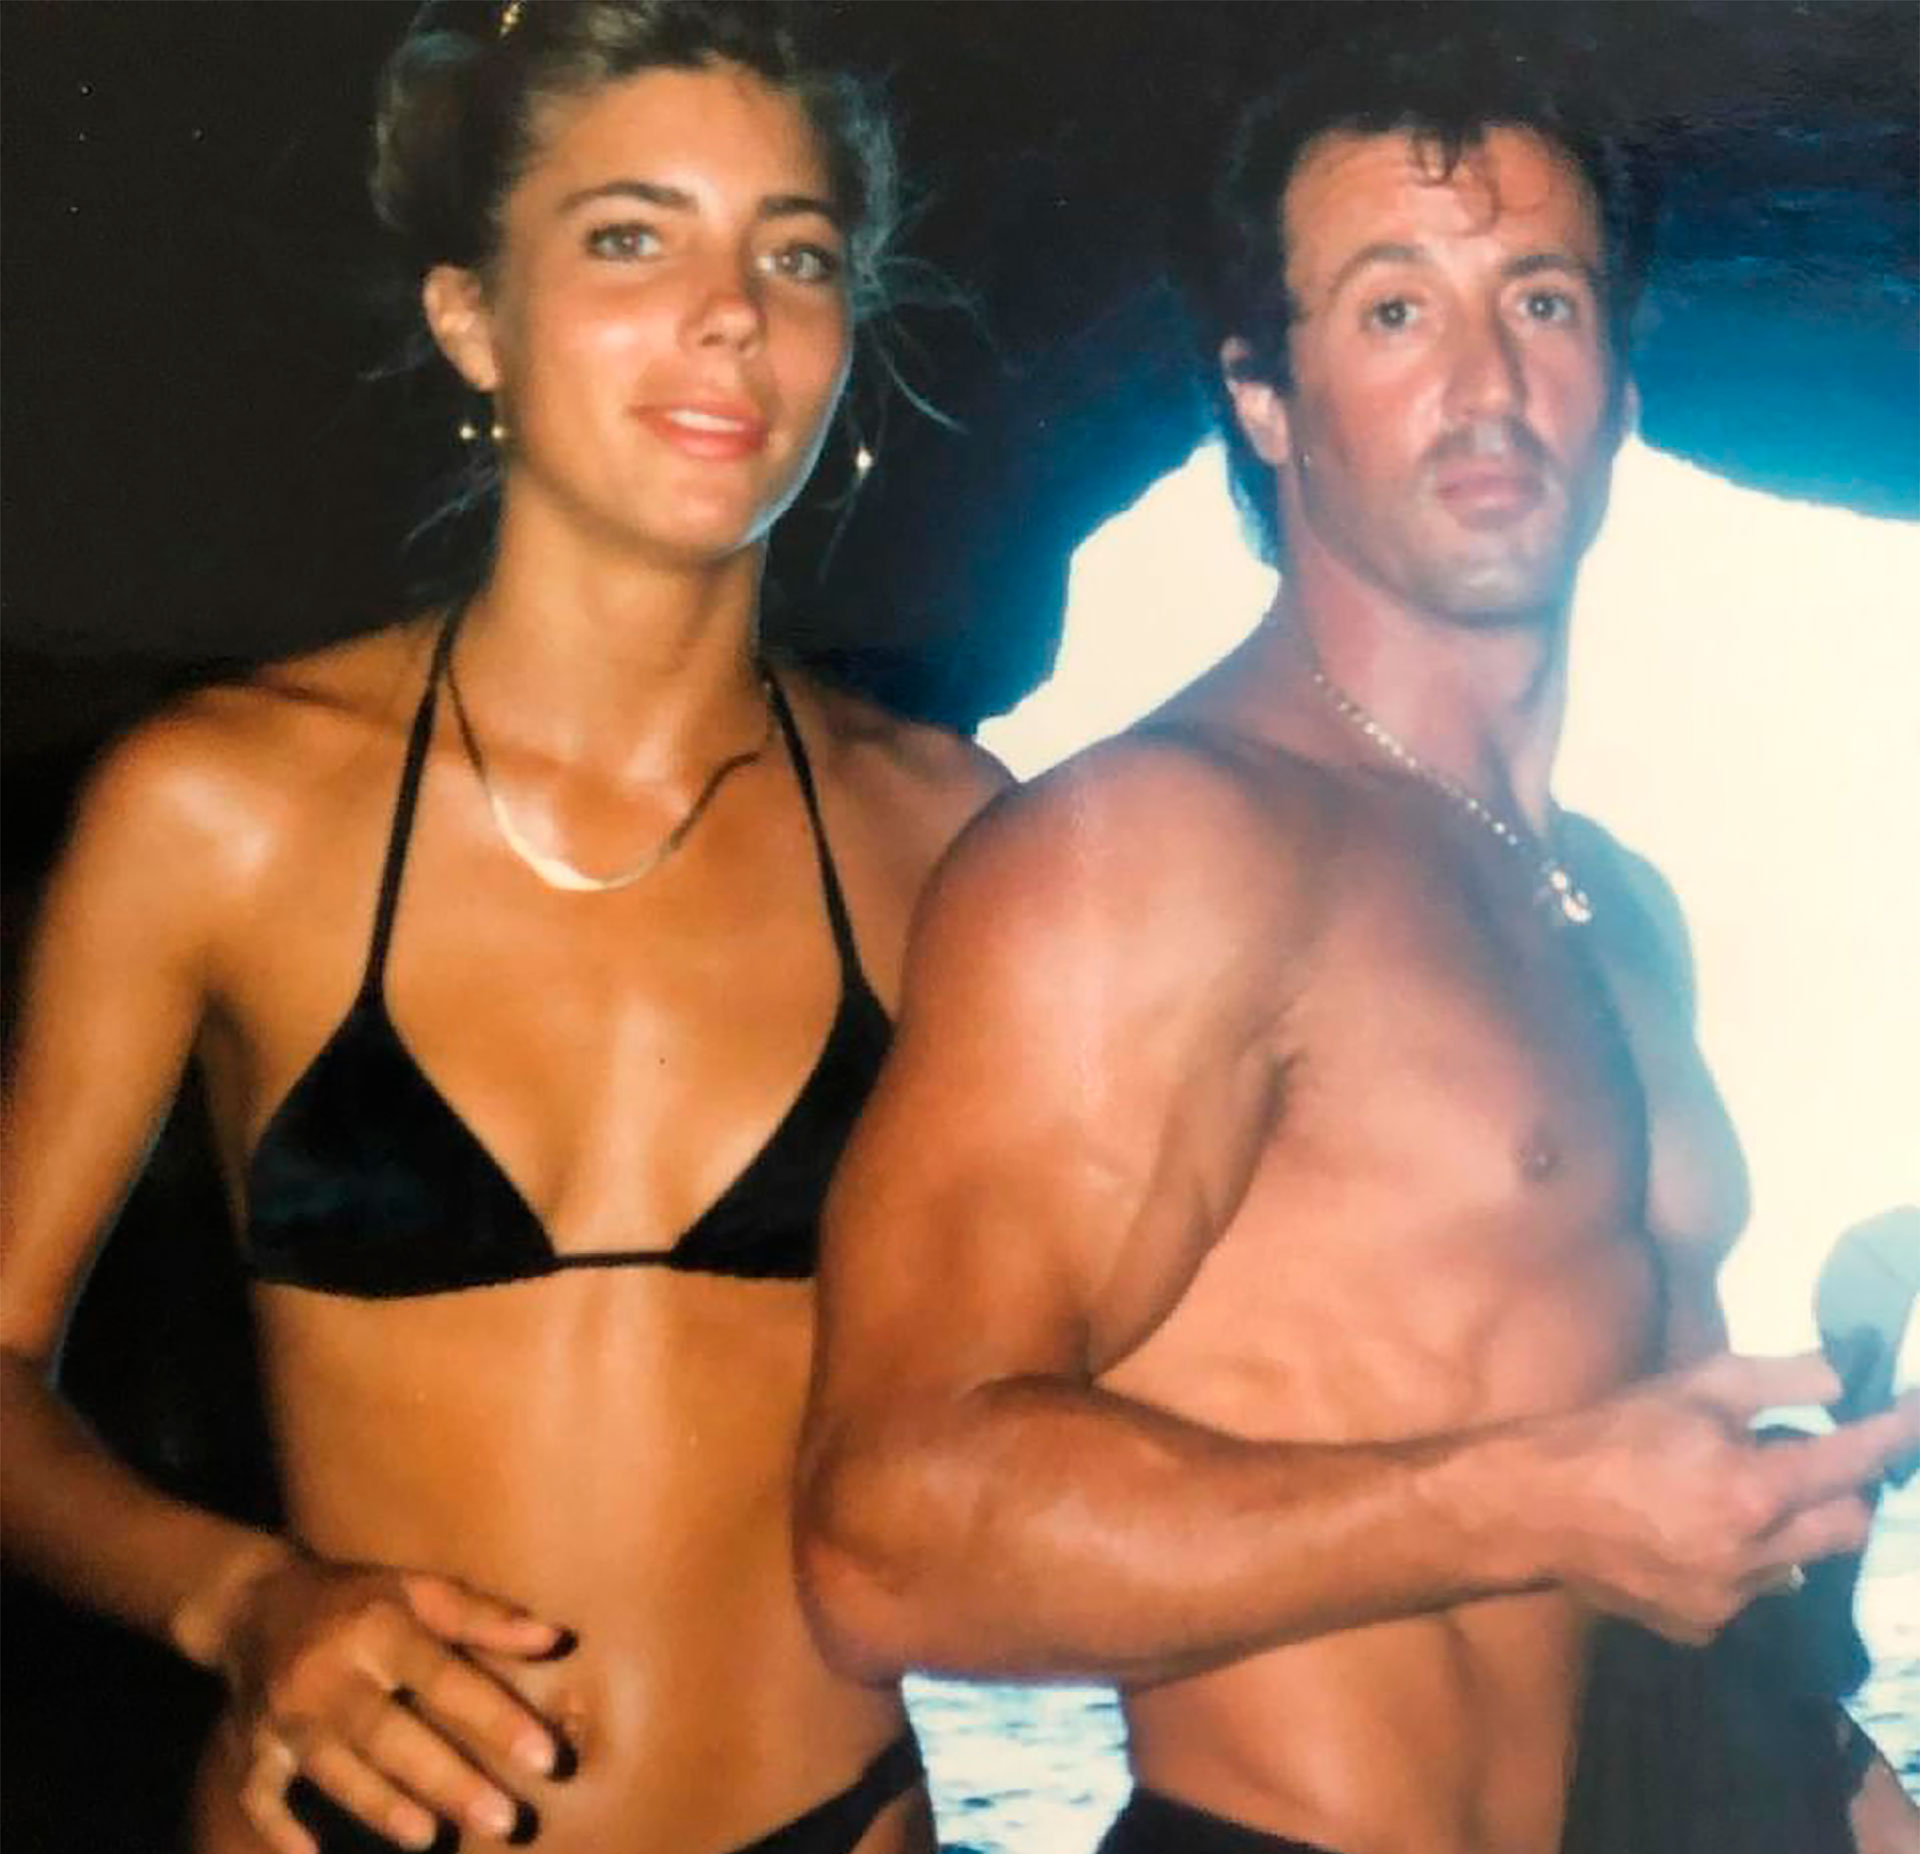 Este es el tercer matrimonio de Stallone, que hasta ahora parecía ser uno de los más fuertes de Hollywood (Foto @Jenniferflavinstallone)